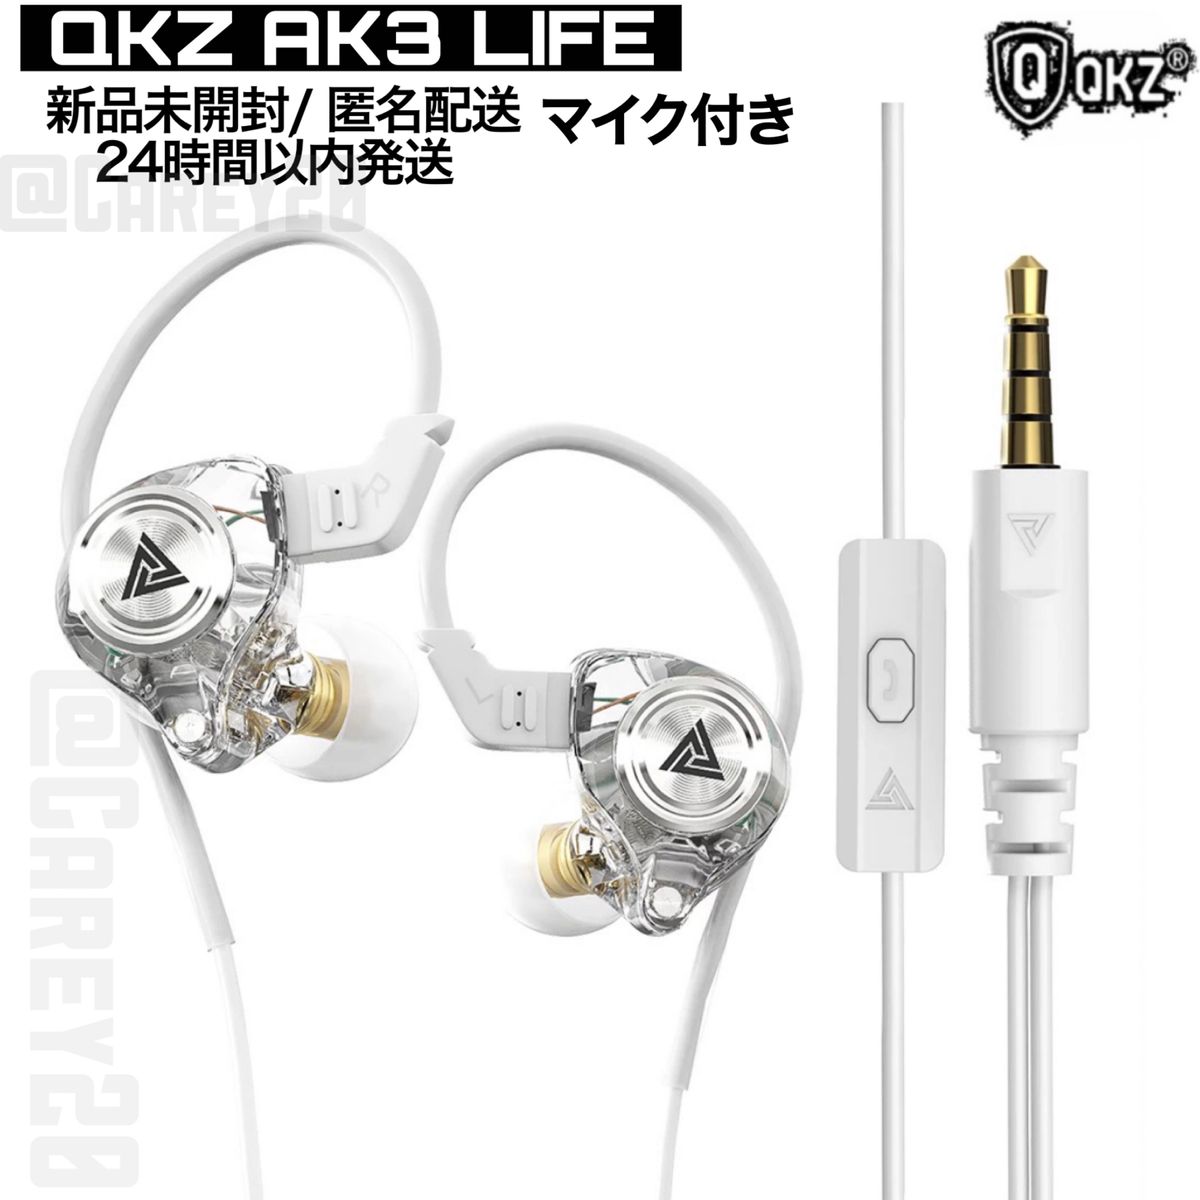 ホワイト qkzak3Life 有線イヤホン 3.5mmダイナミックドライバー イヤフォン hifi高音質 ゲーミングヘッドセット